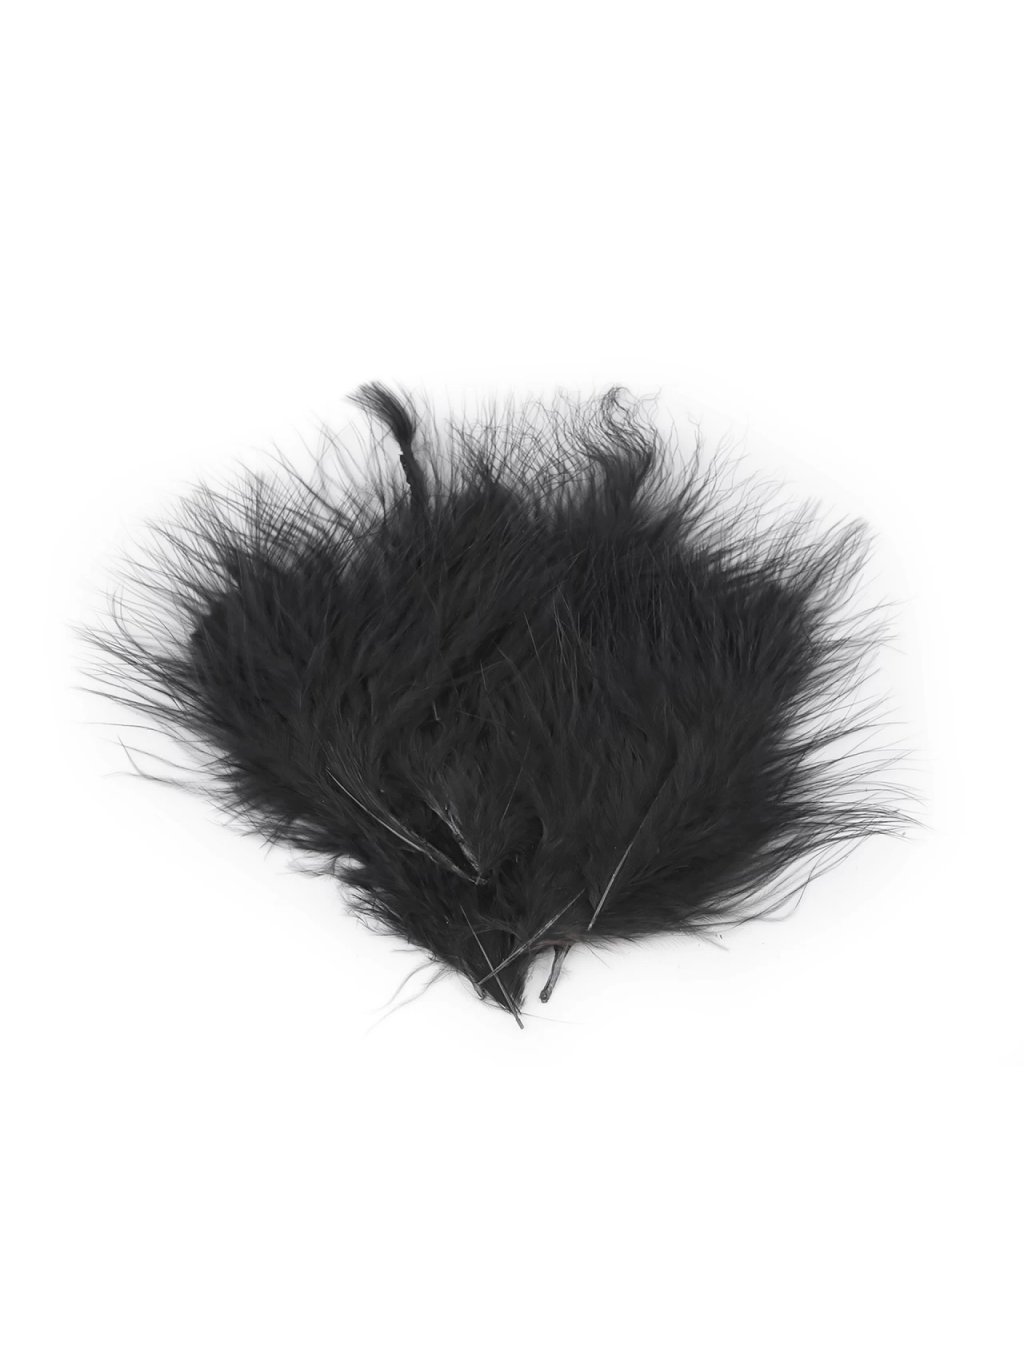 Peří marabu černé 5 - 12 cm